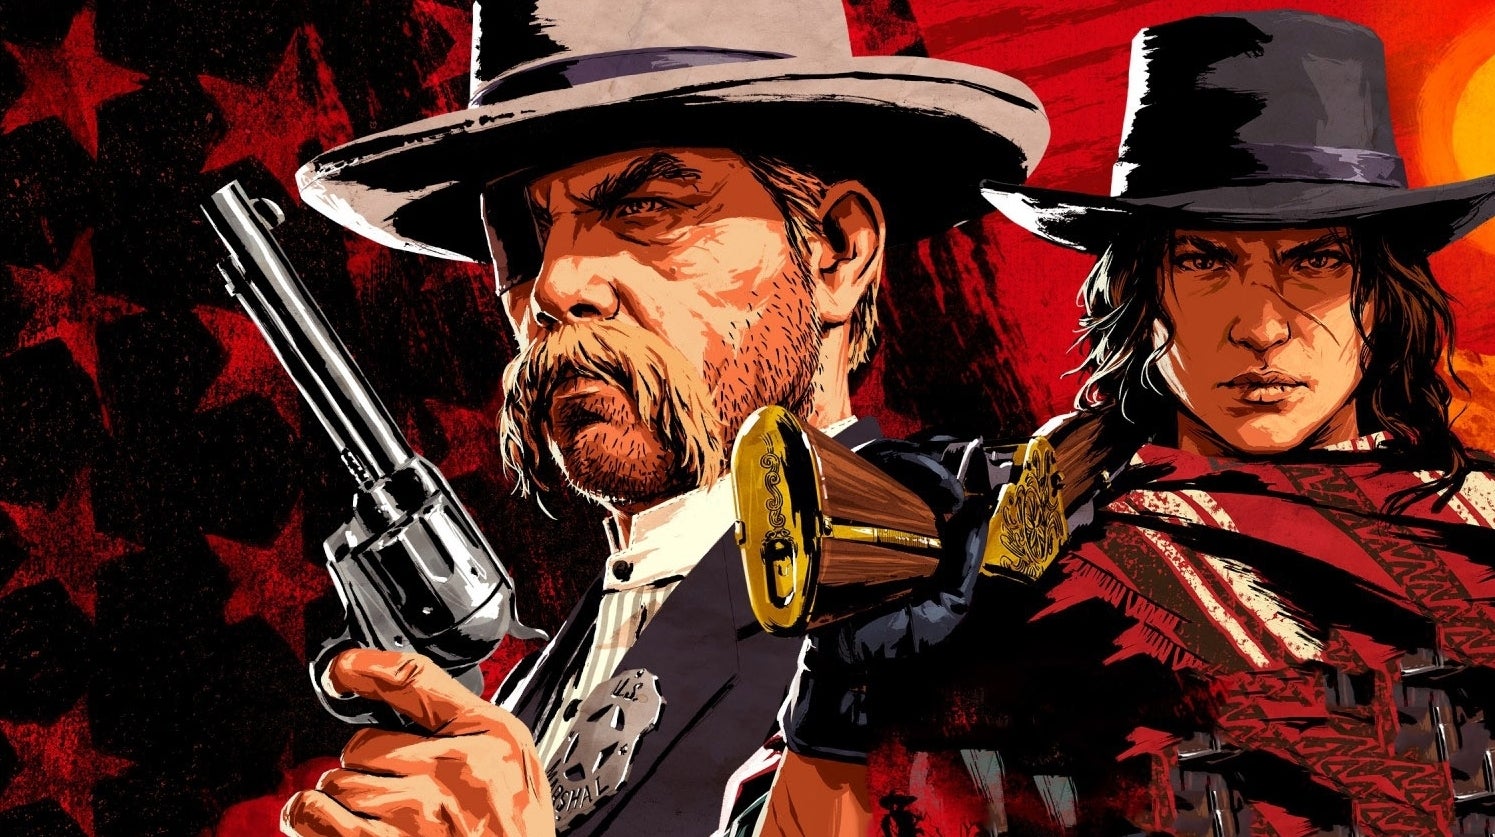 Bilder zu Red Dead Redemption 2: Funktioniert das HDR jetzt? Patch 1.09 im Test